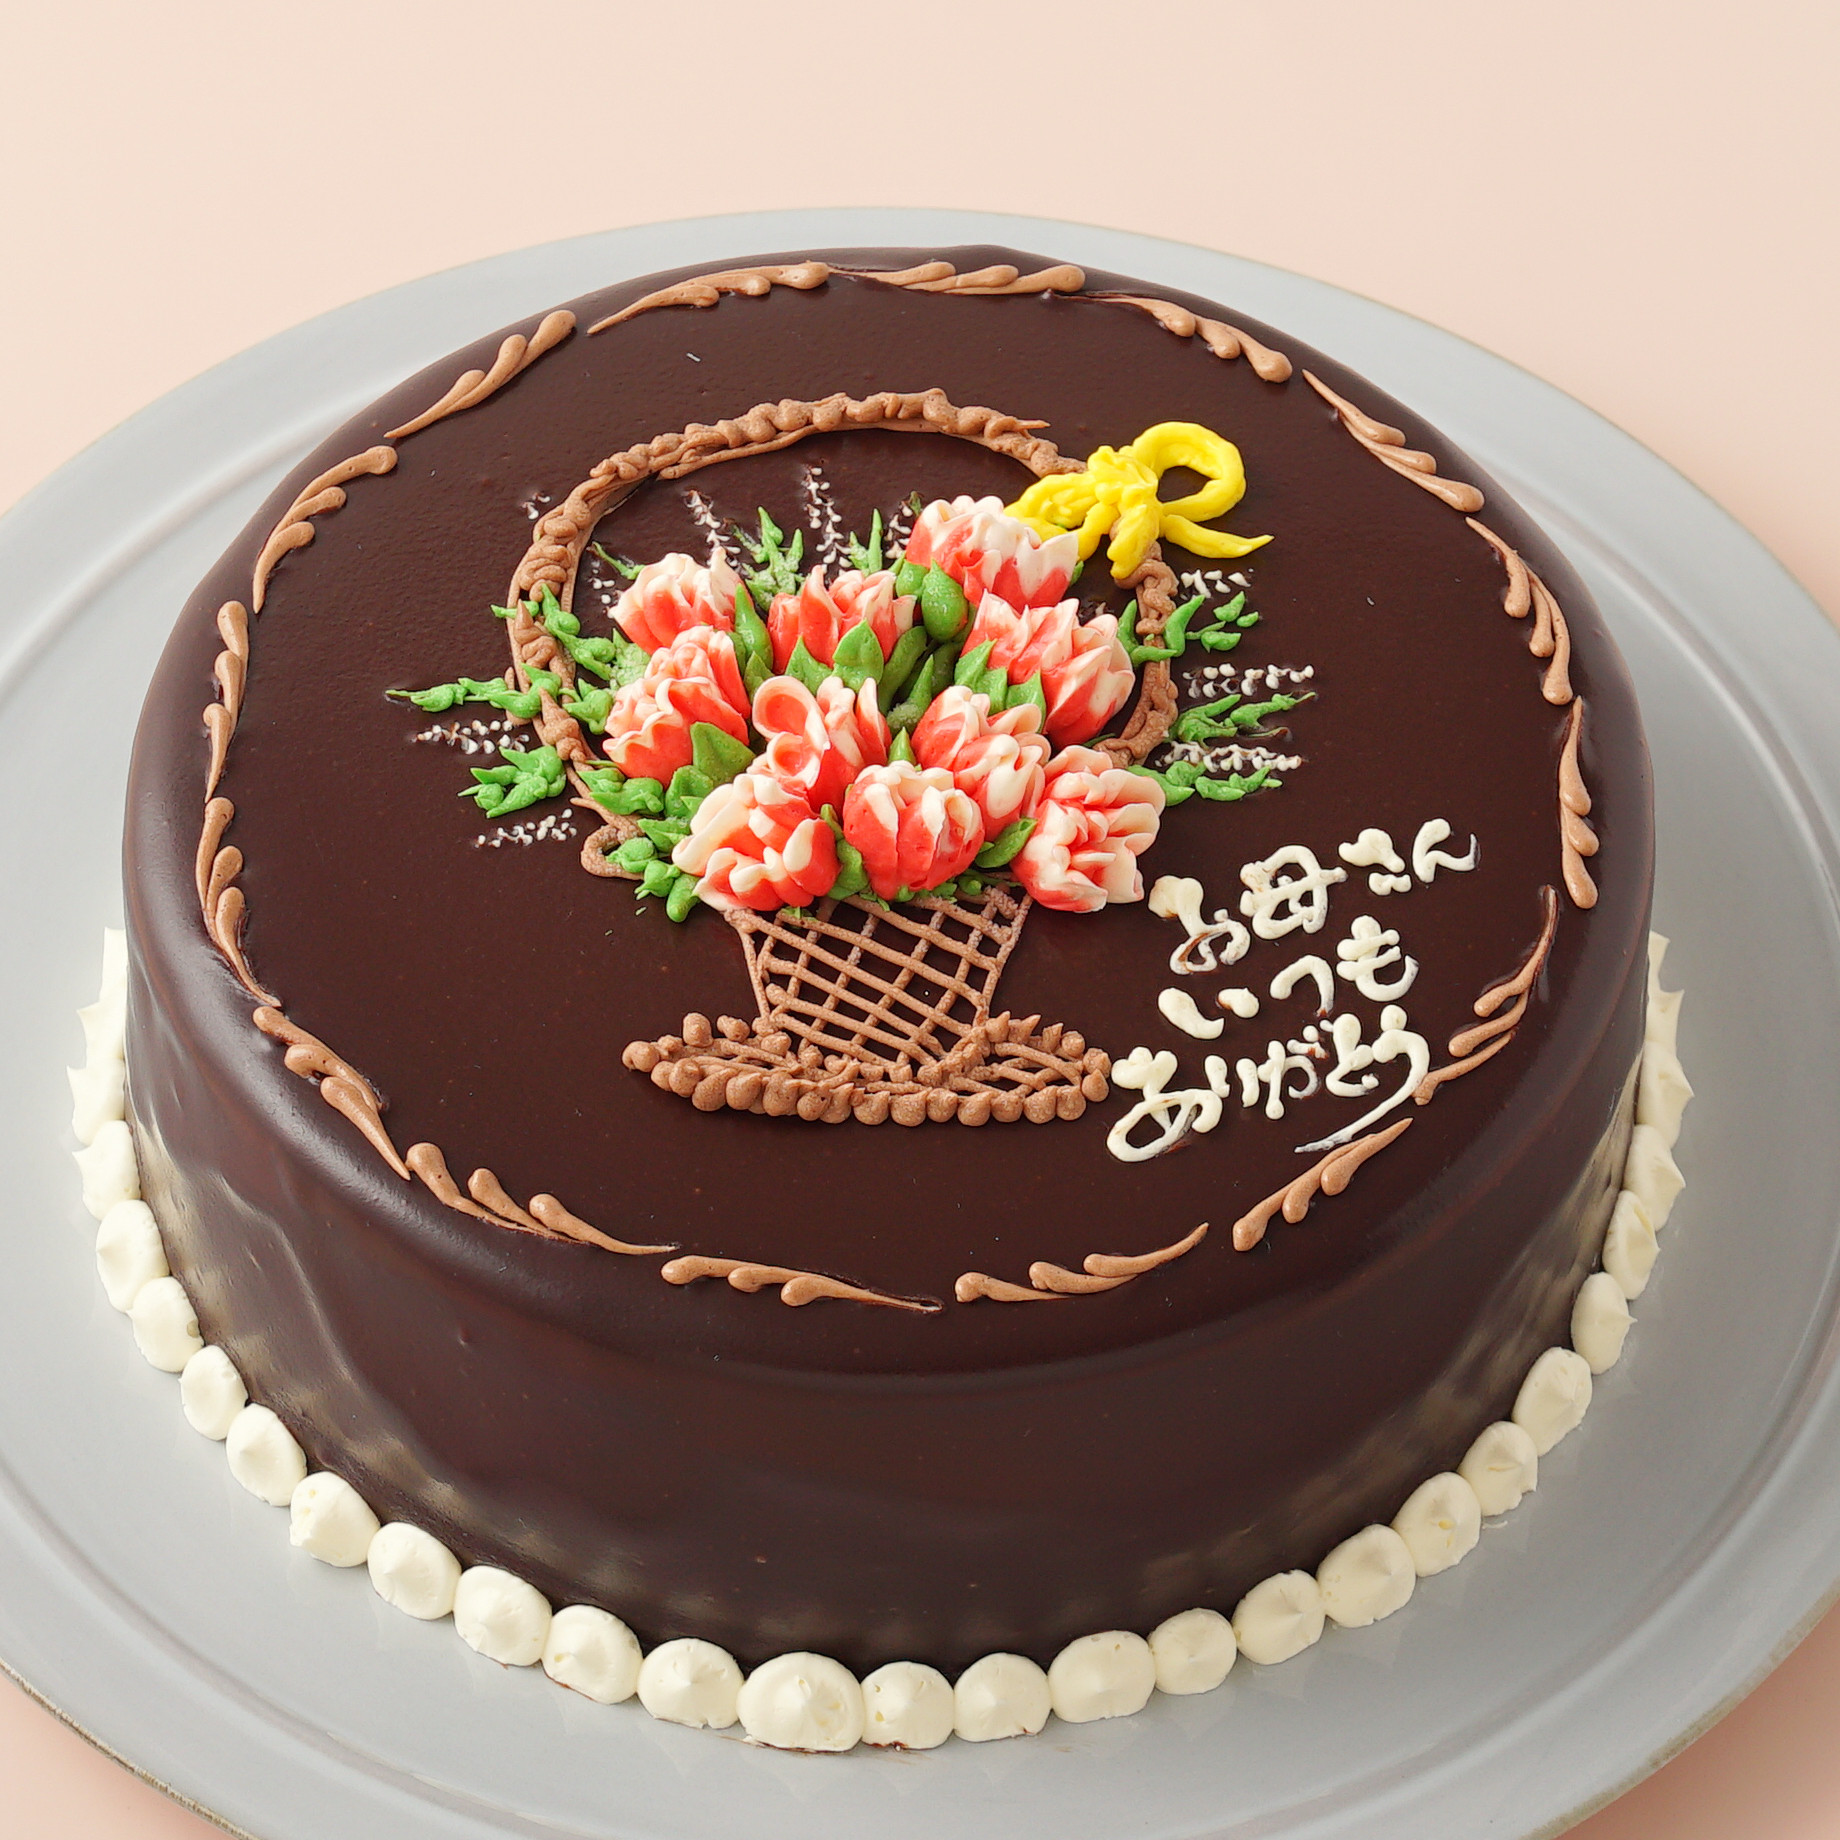 カーネーションのチョコレートクリームデコレーション 《Cake.jp限定》 2